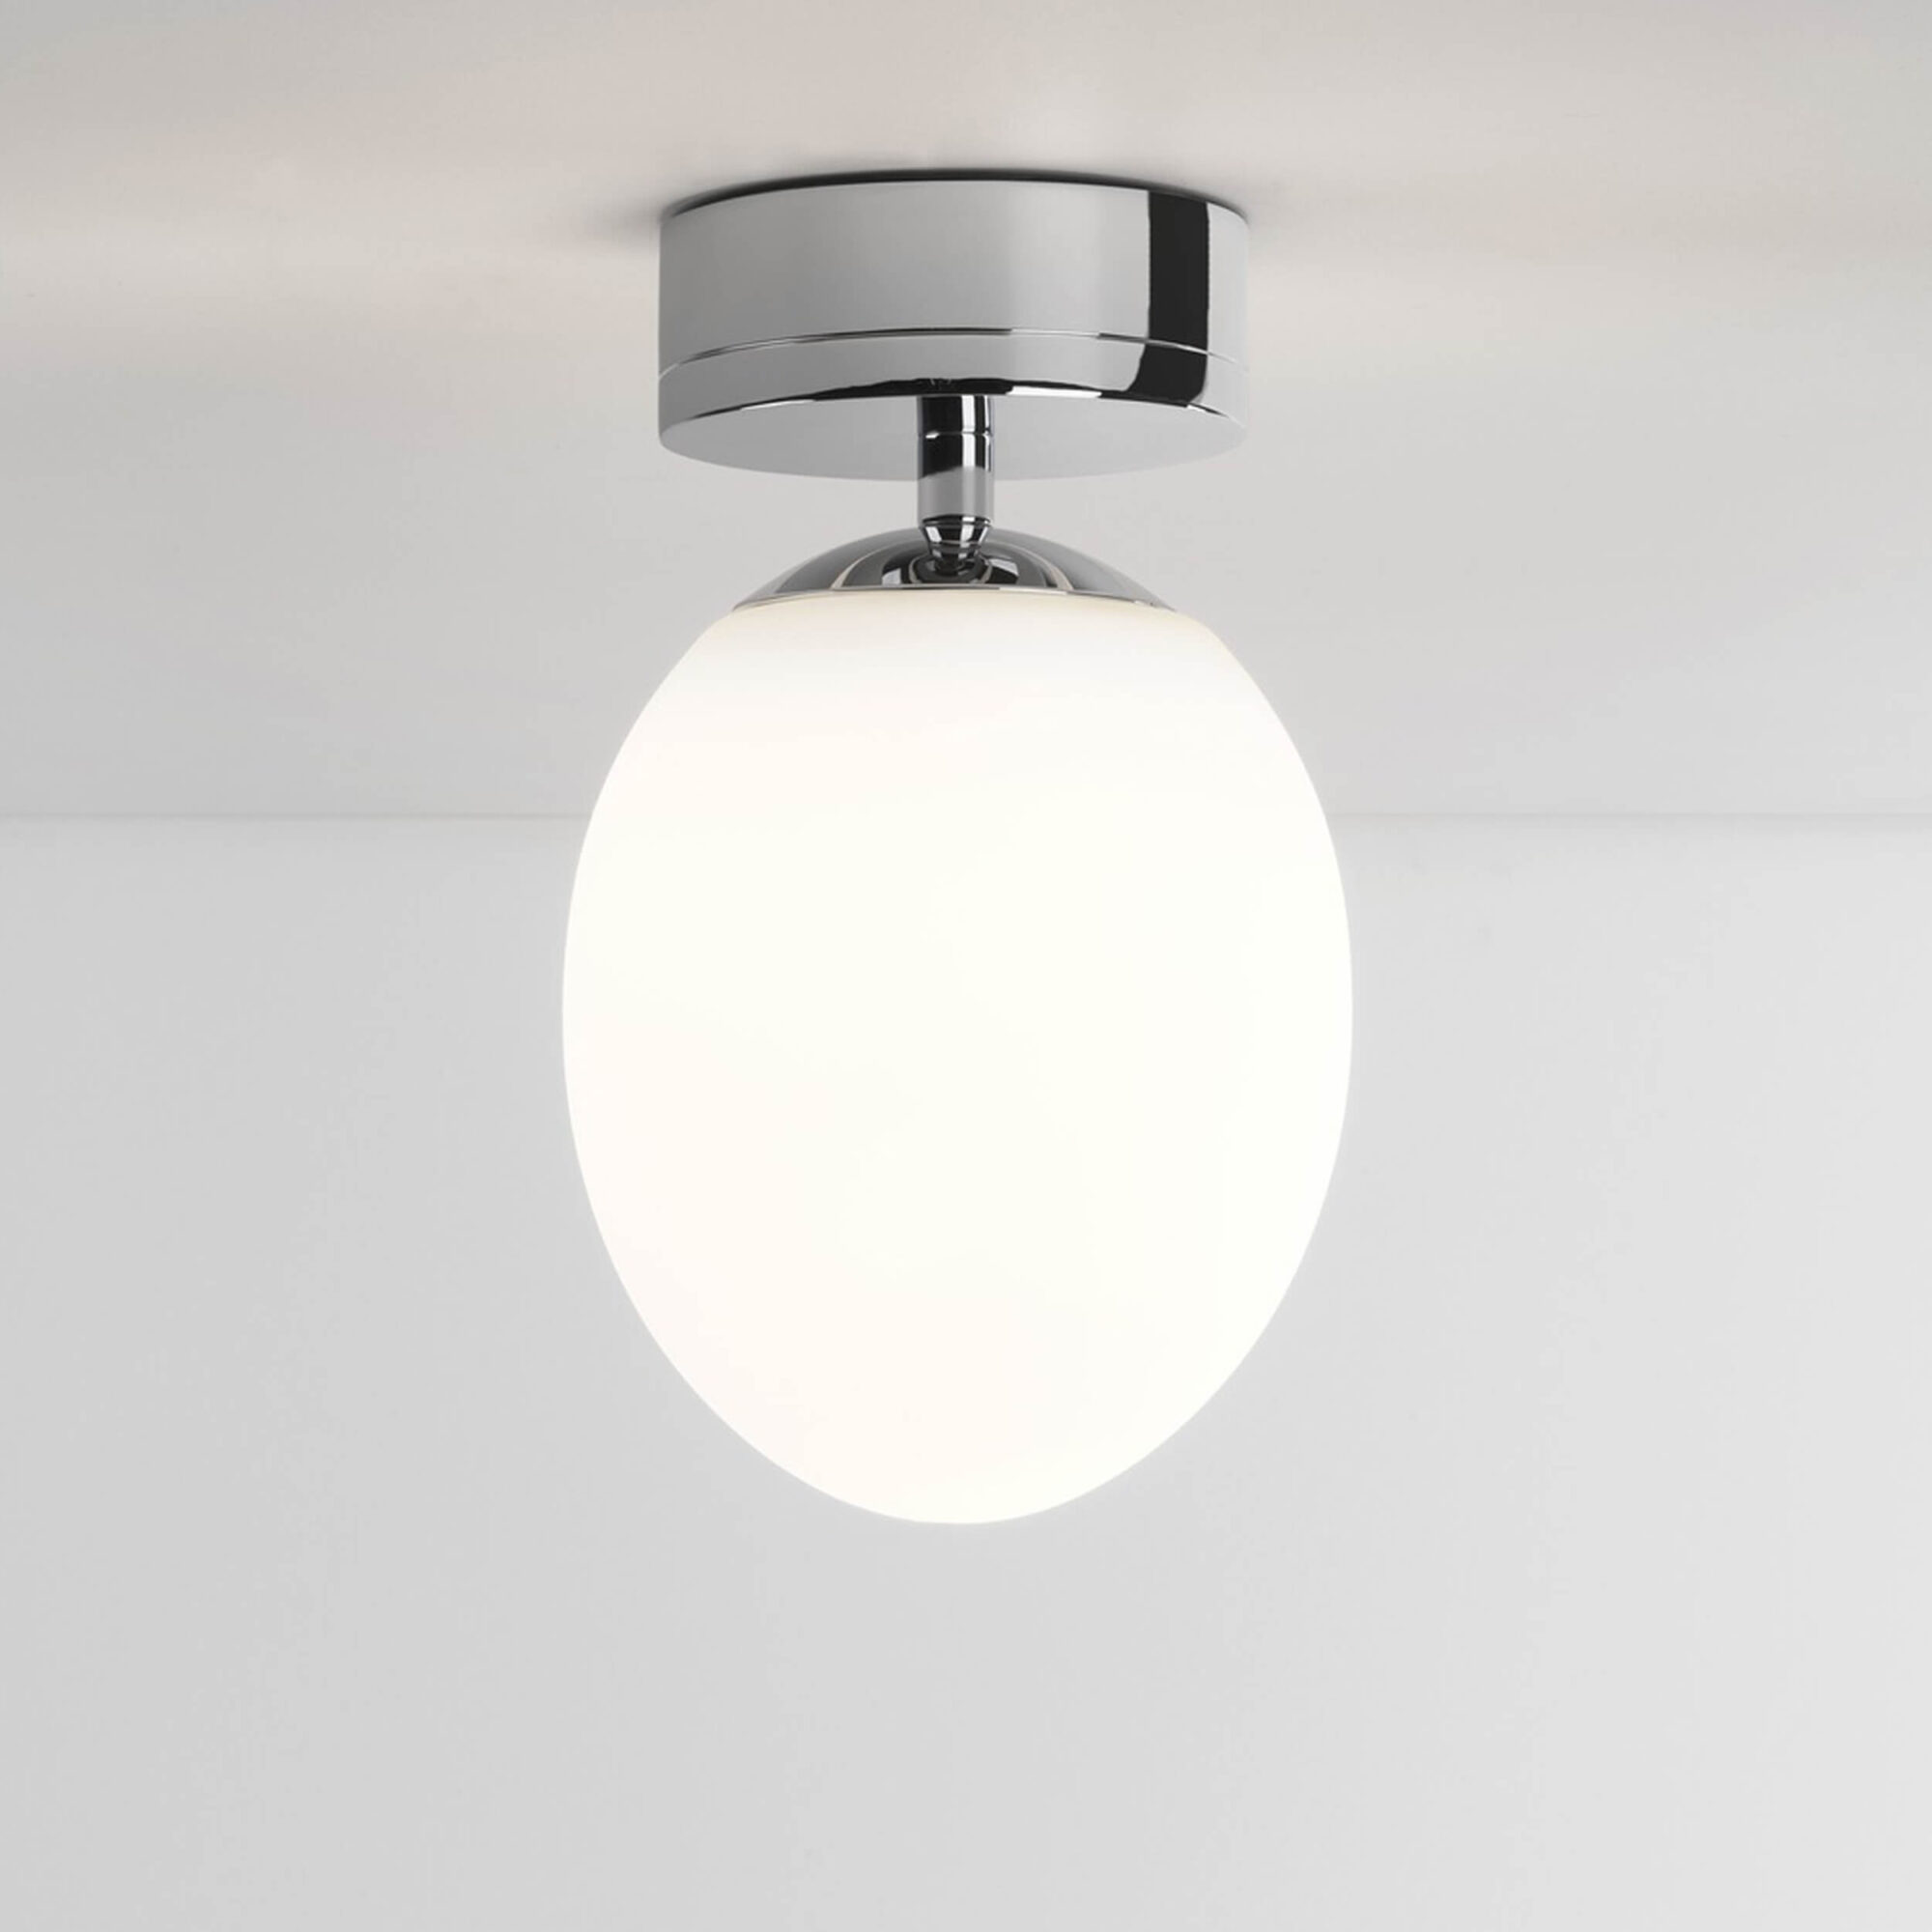 Kiwi ceiling LED bathroom light